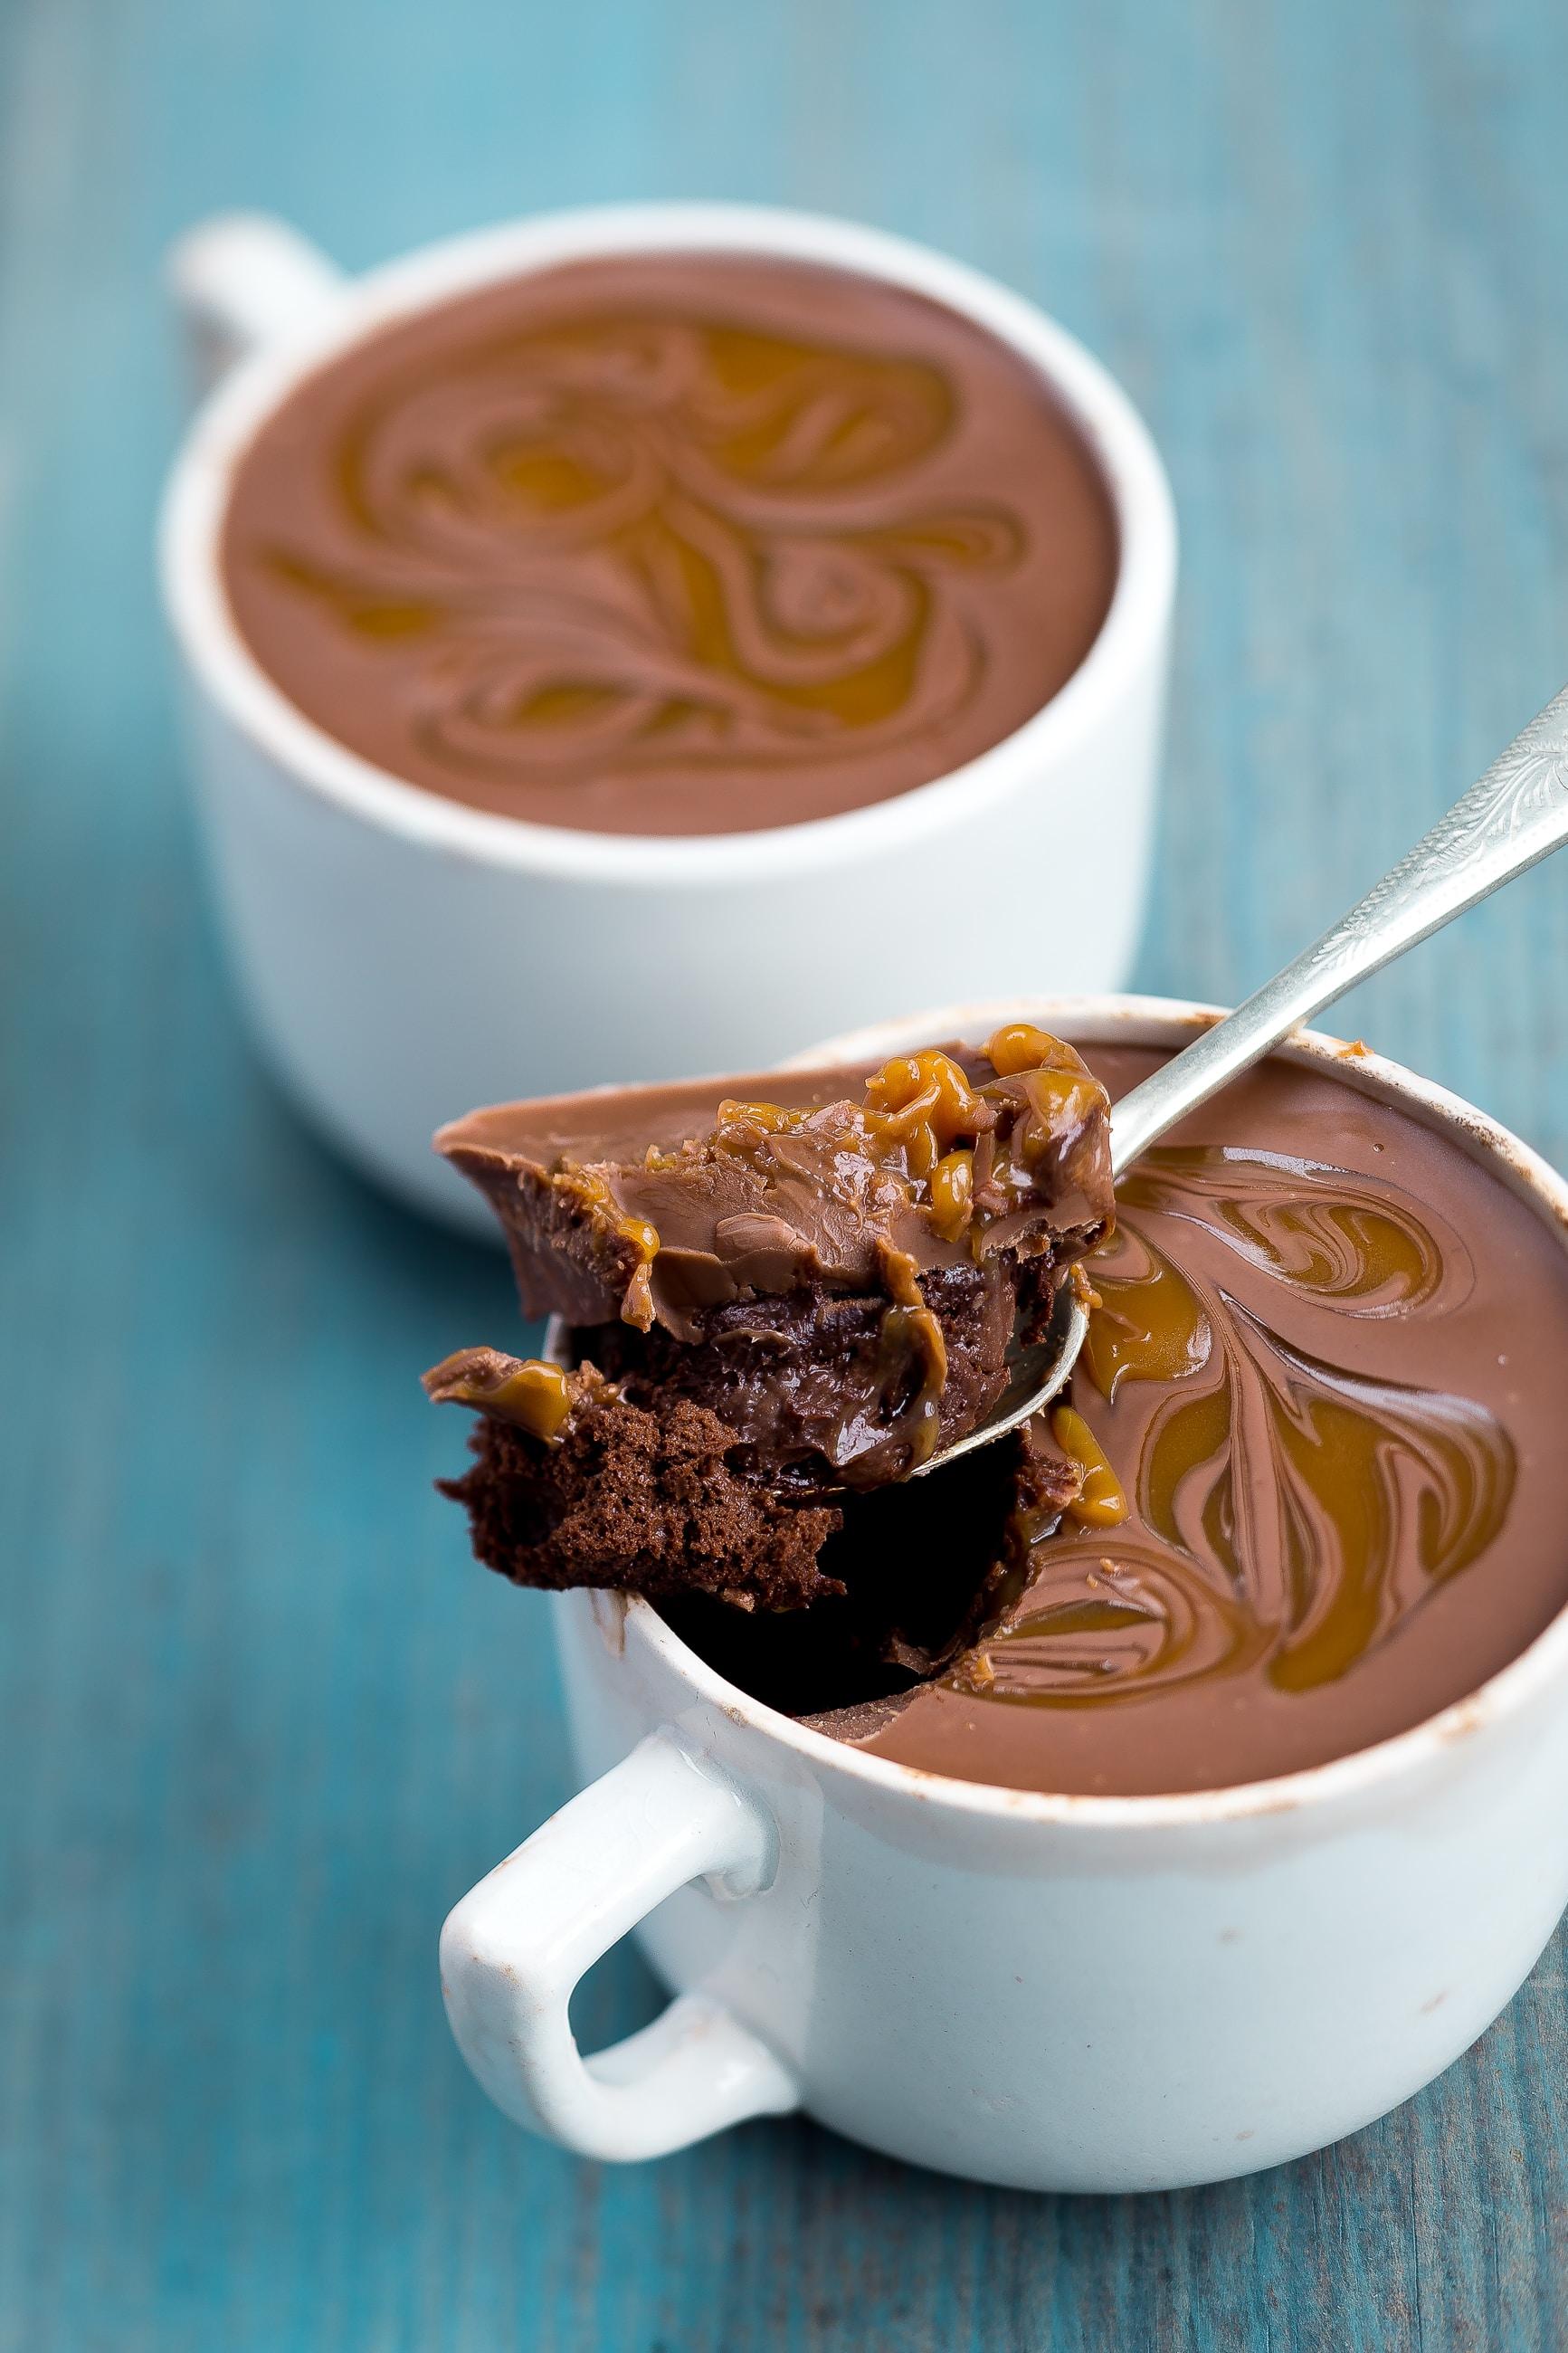 Pudding de chocolate. Hannah Pemberton en Unsplash